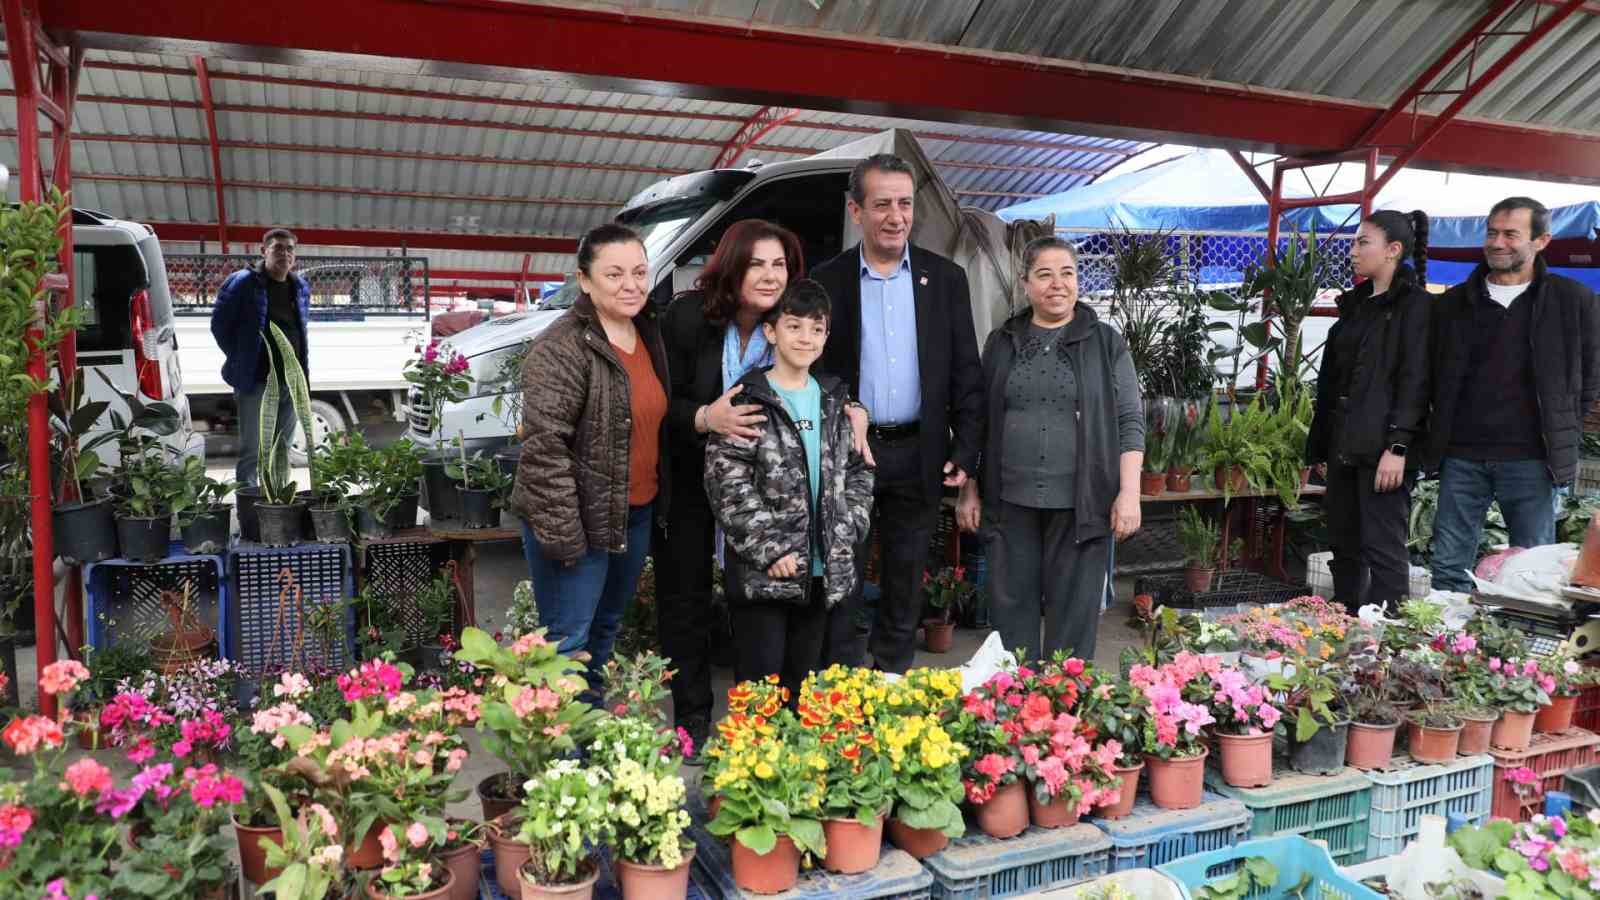 Efeler Belediye Başkan Adayı Yetiştin’den pazar ziyareti